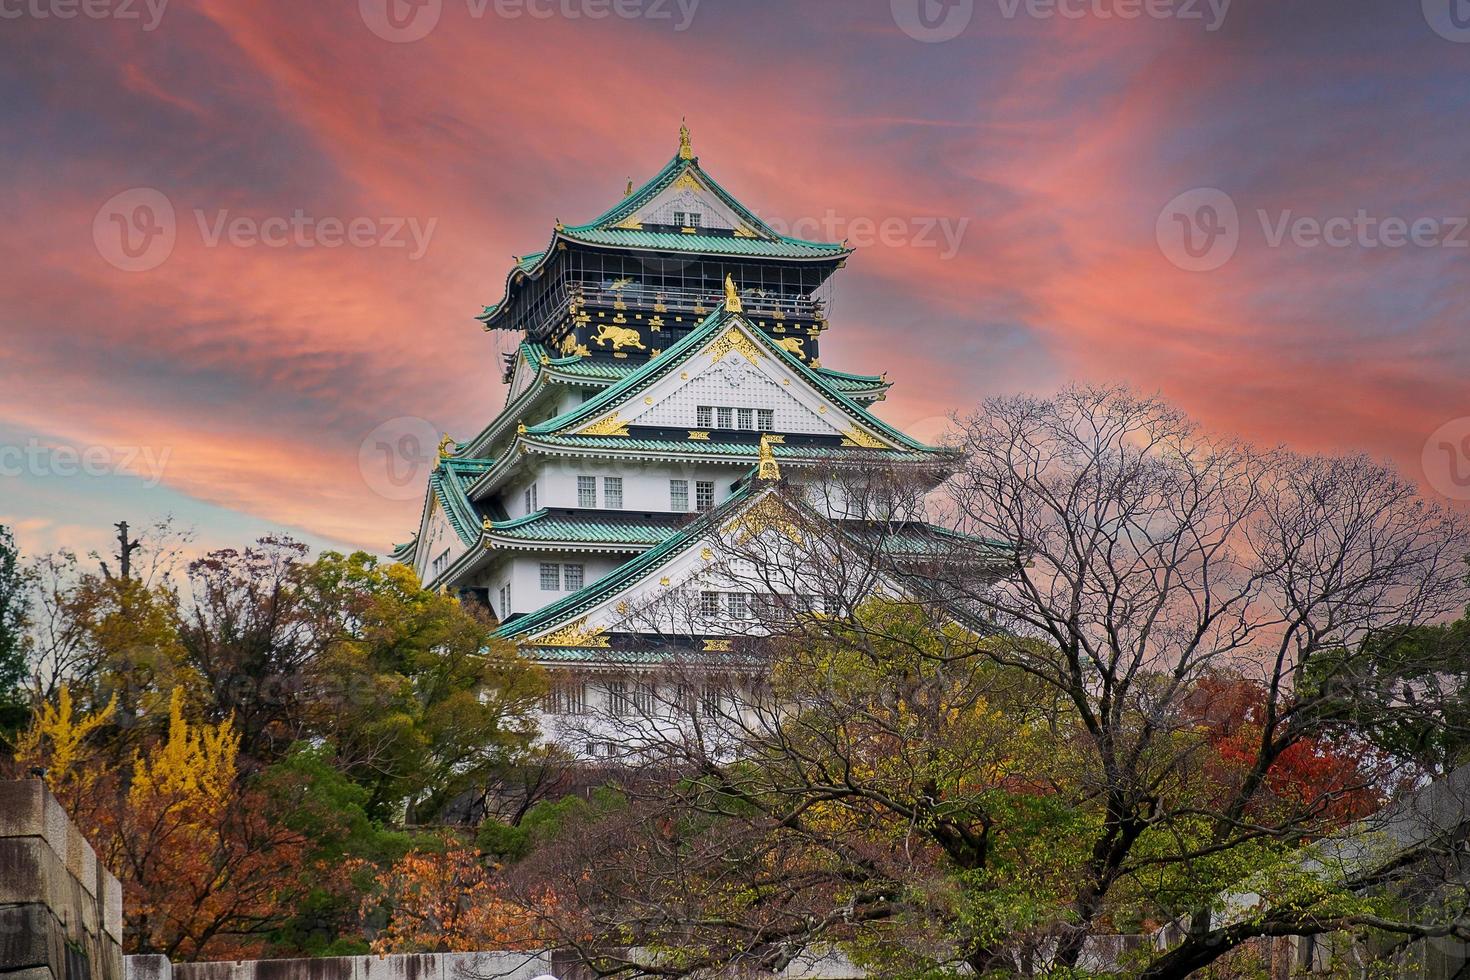 osaka castle in der herbstlaubsaison, ist ein berühmtes japanisches schloss, wahrzeichen und beliebt für touristenattraktionen in osaka, kansai, japan foto